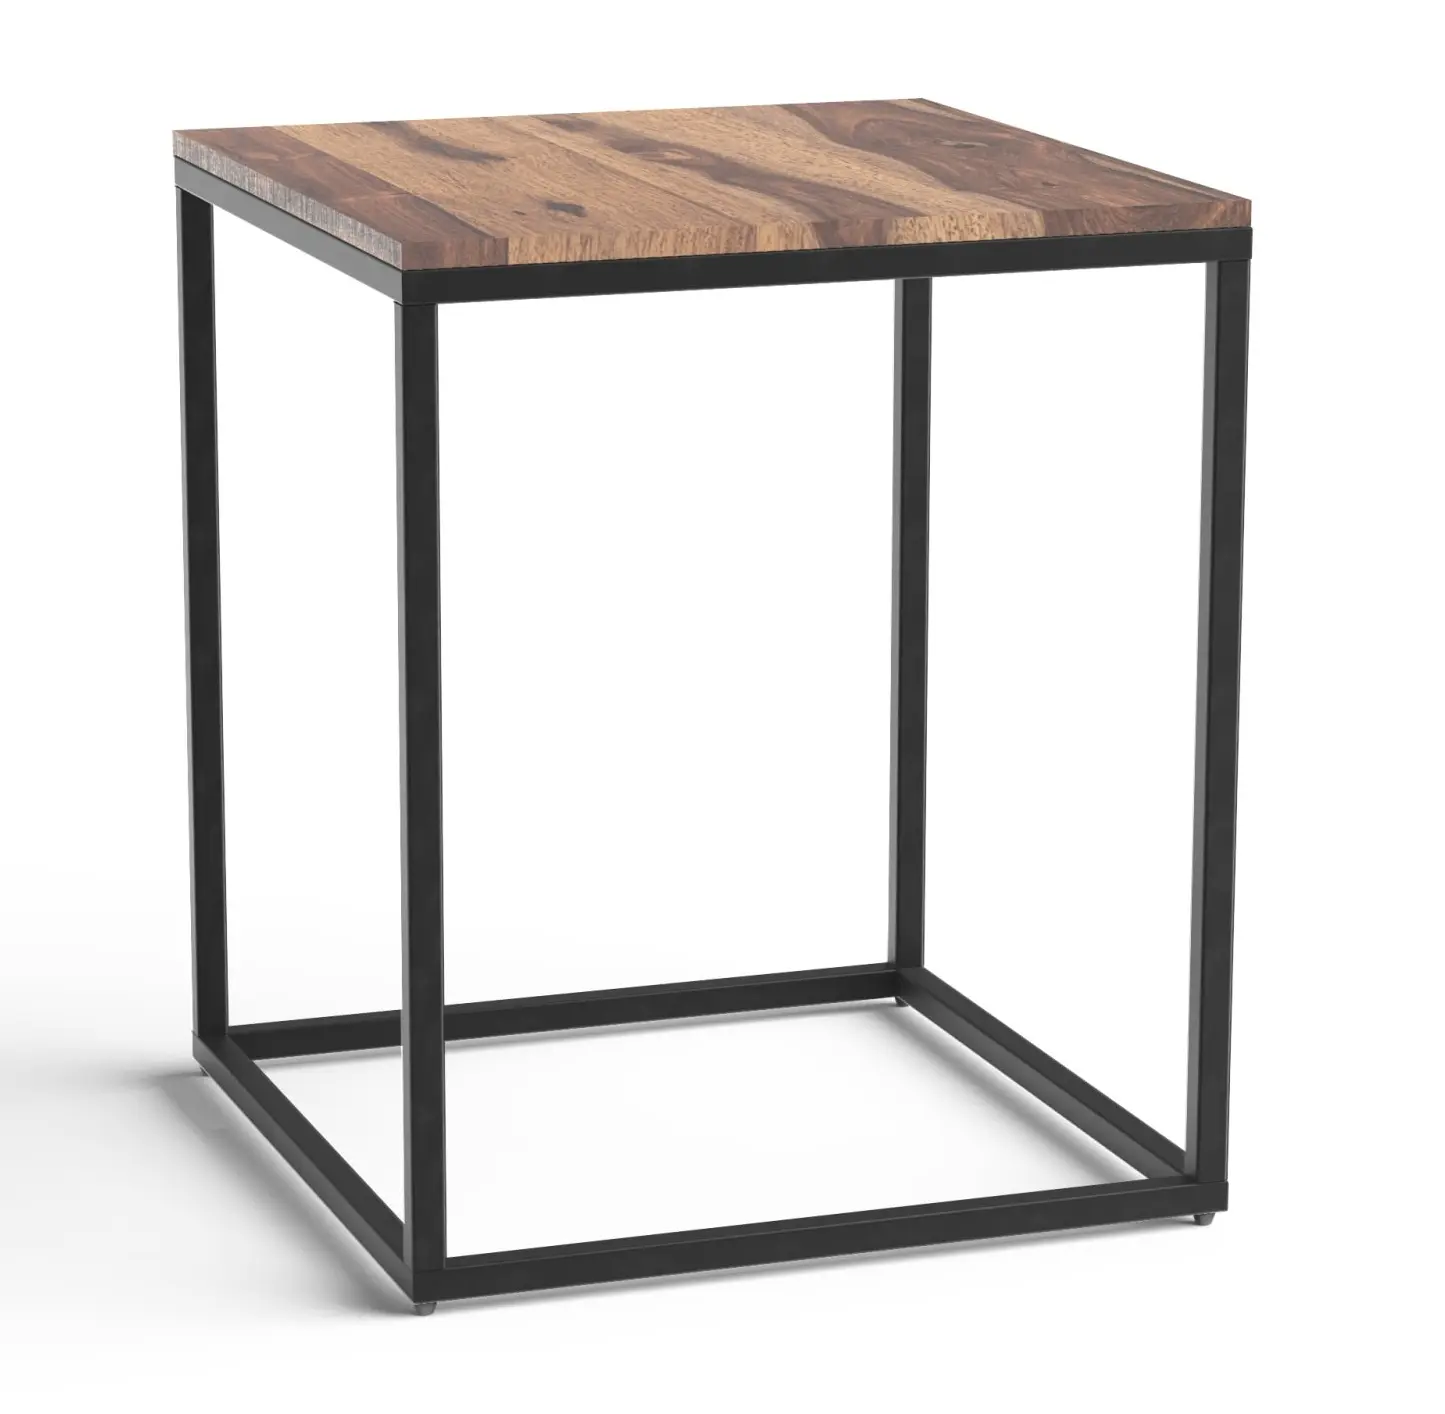 चौकोर आकार की प्राकृतिक लकड़ी की शीर्ष और धातु फ्रेम टेबल उत्कृष्ट गुणवत्ता वाली हस्तनिर्मित डिजाइनर टेबल नई डिजाइन धातु कॉफी टेबल